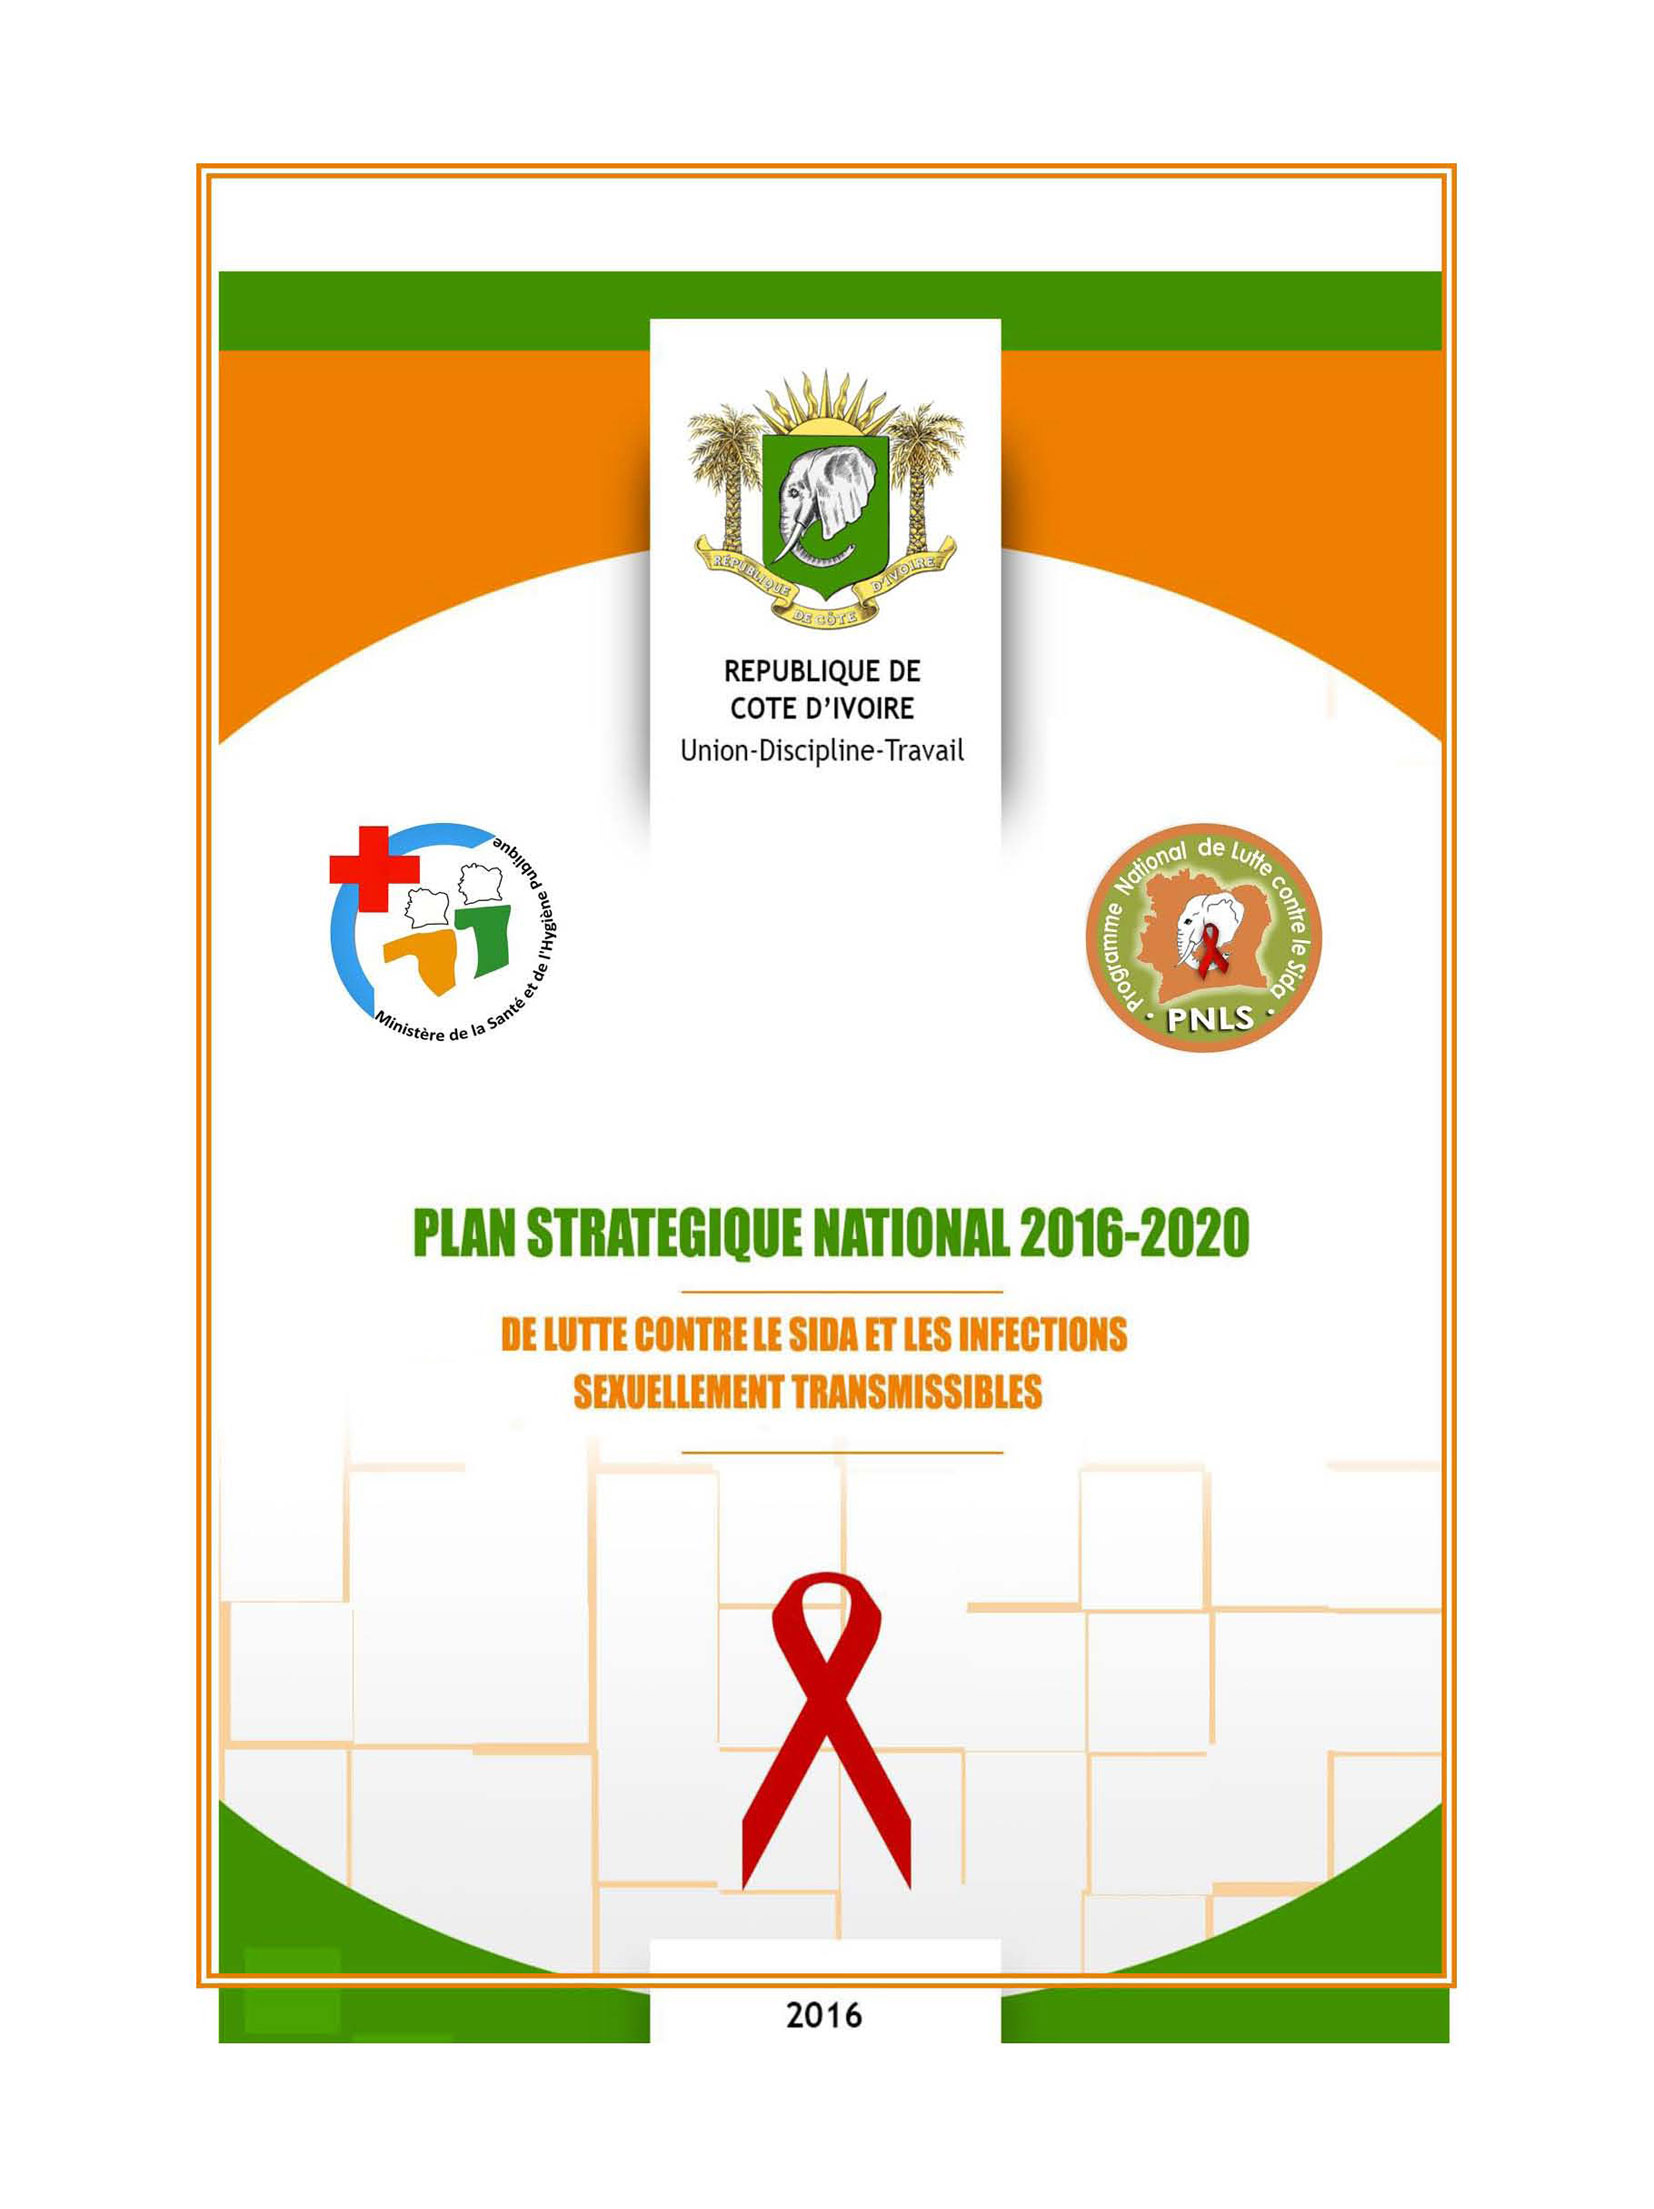 2016-2020 Plan stratégique national de lutte contre le sida et les IST